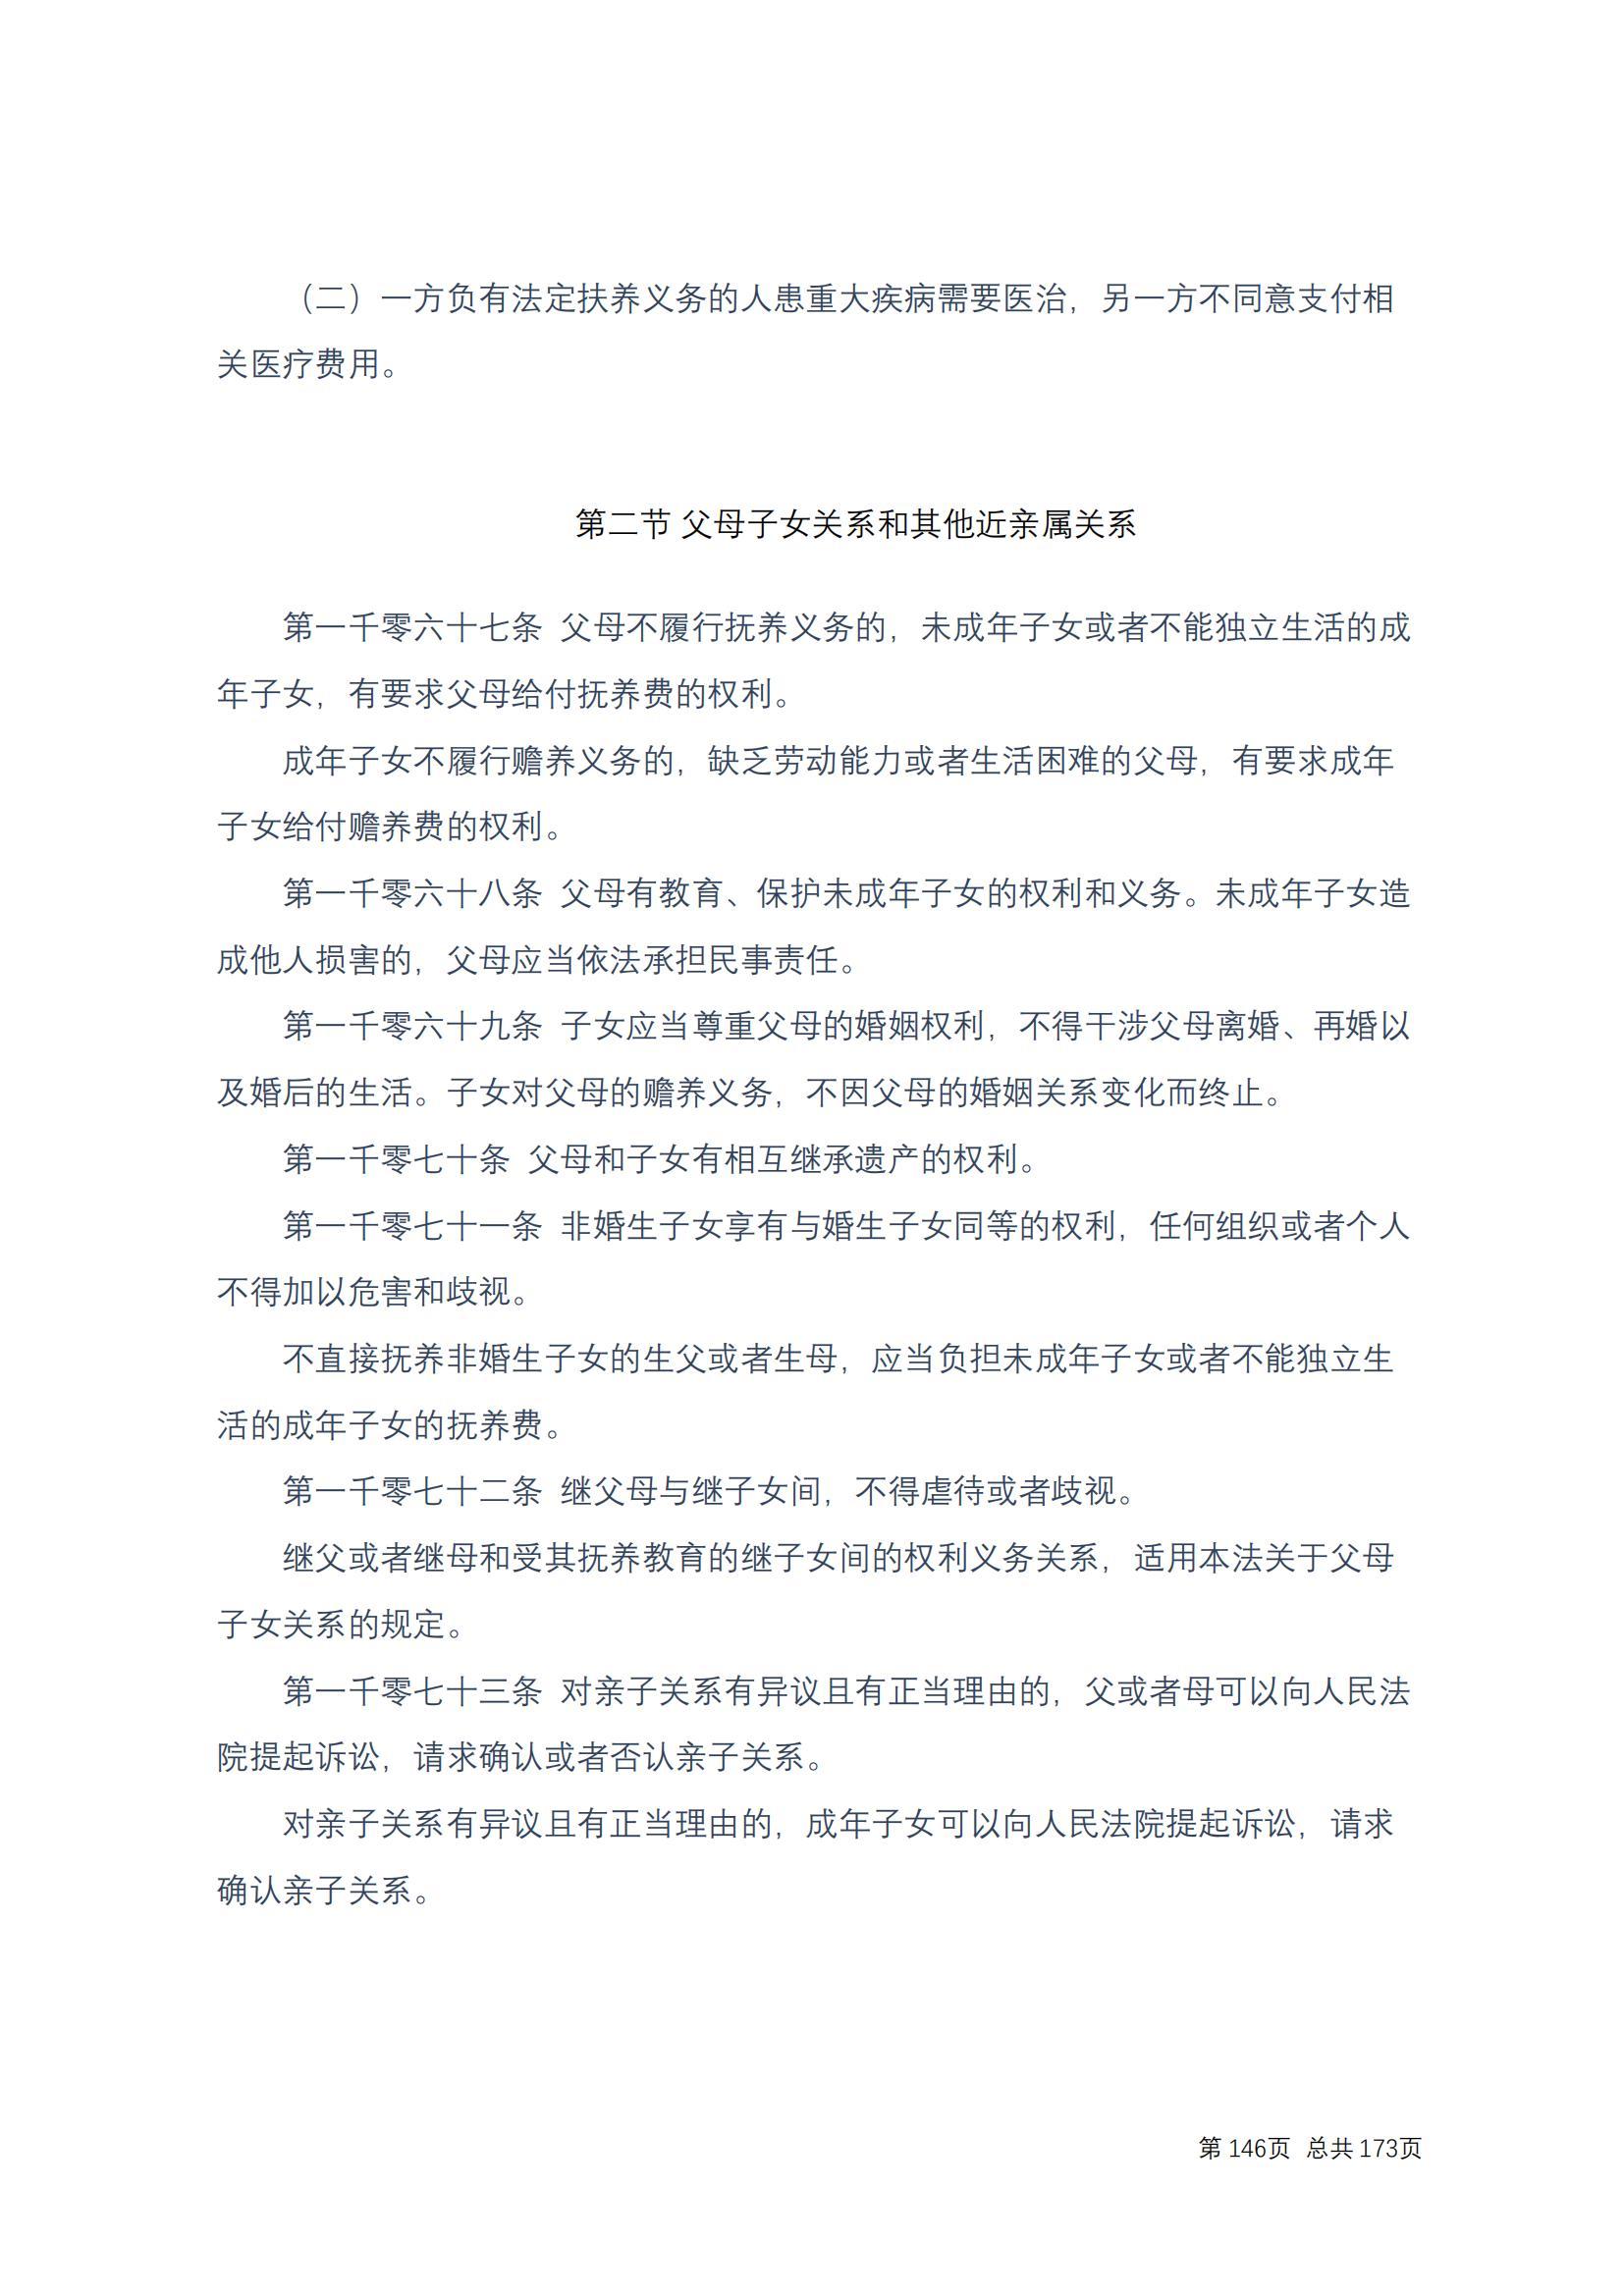 中华人民共和国民法典 修改过_145